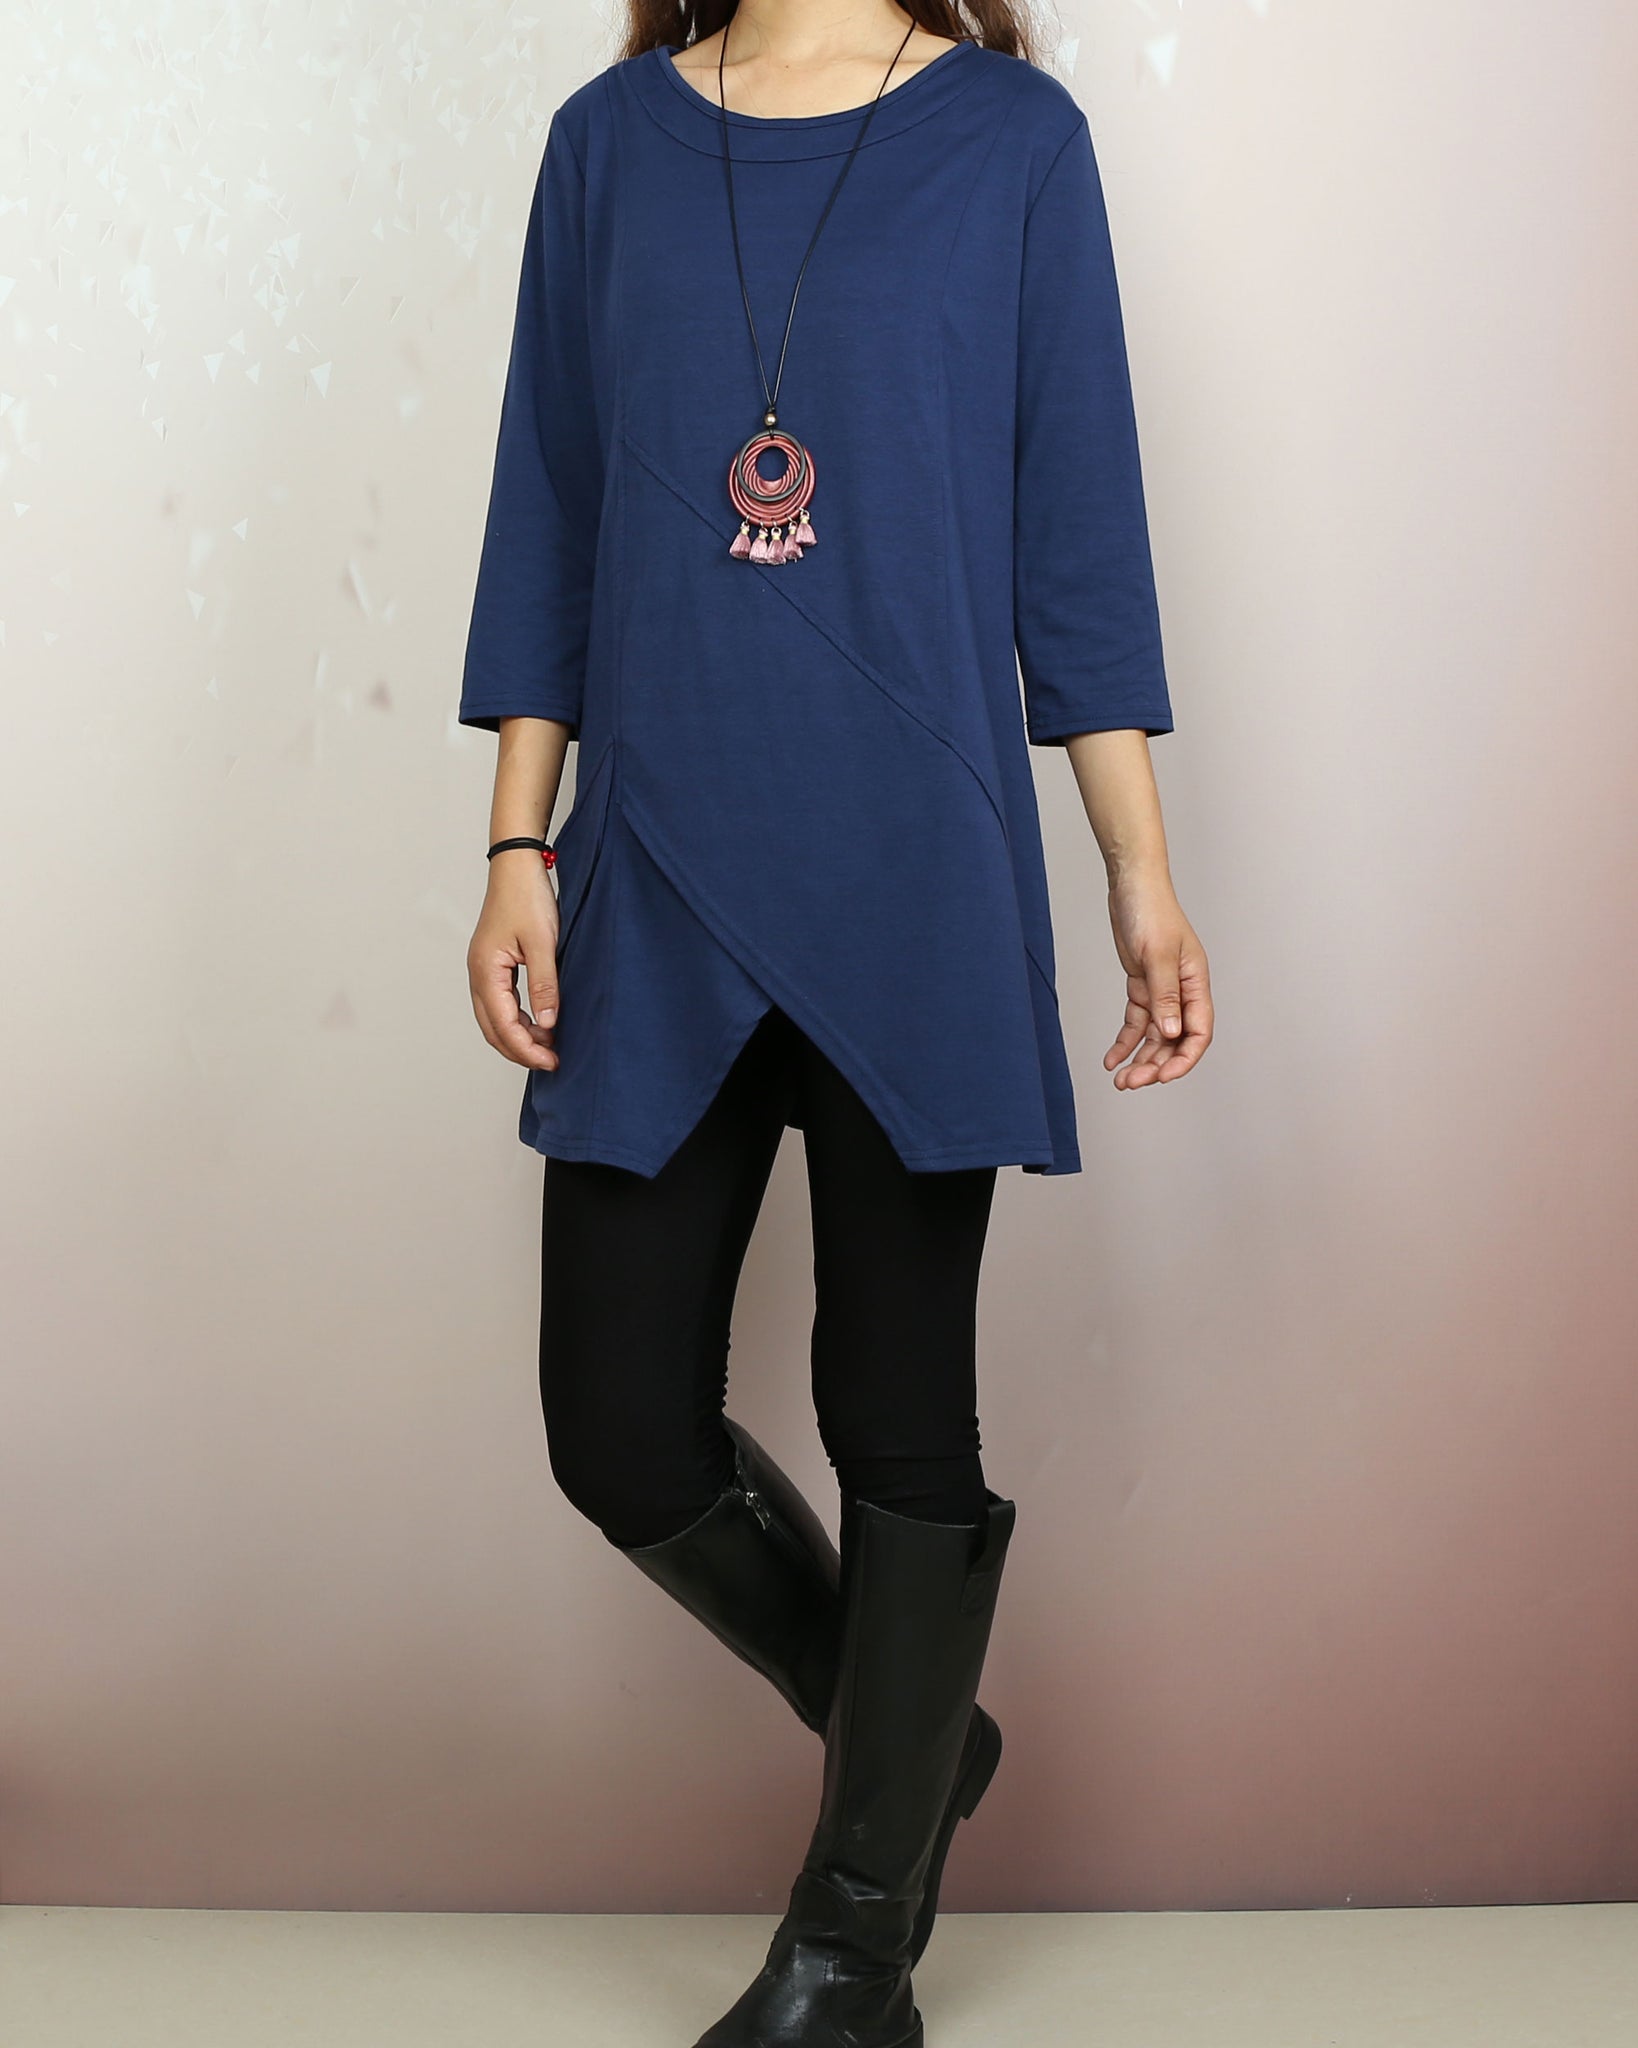 Boho tunic tops, 3/4 sleeve cotton tunic top, casual loose t-shirt, wo –  lijingshop